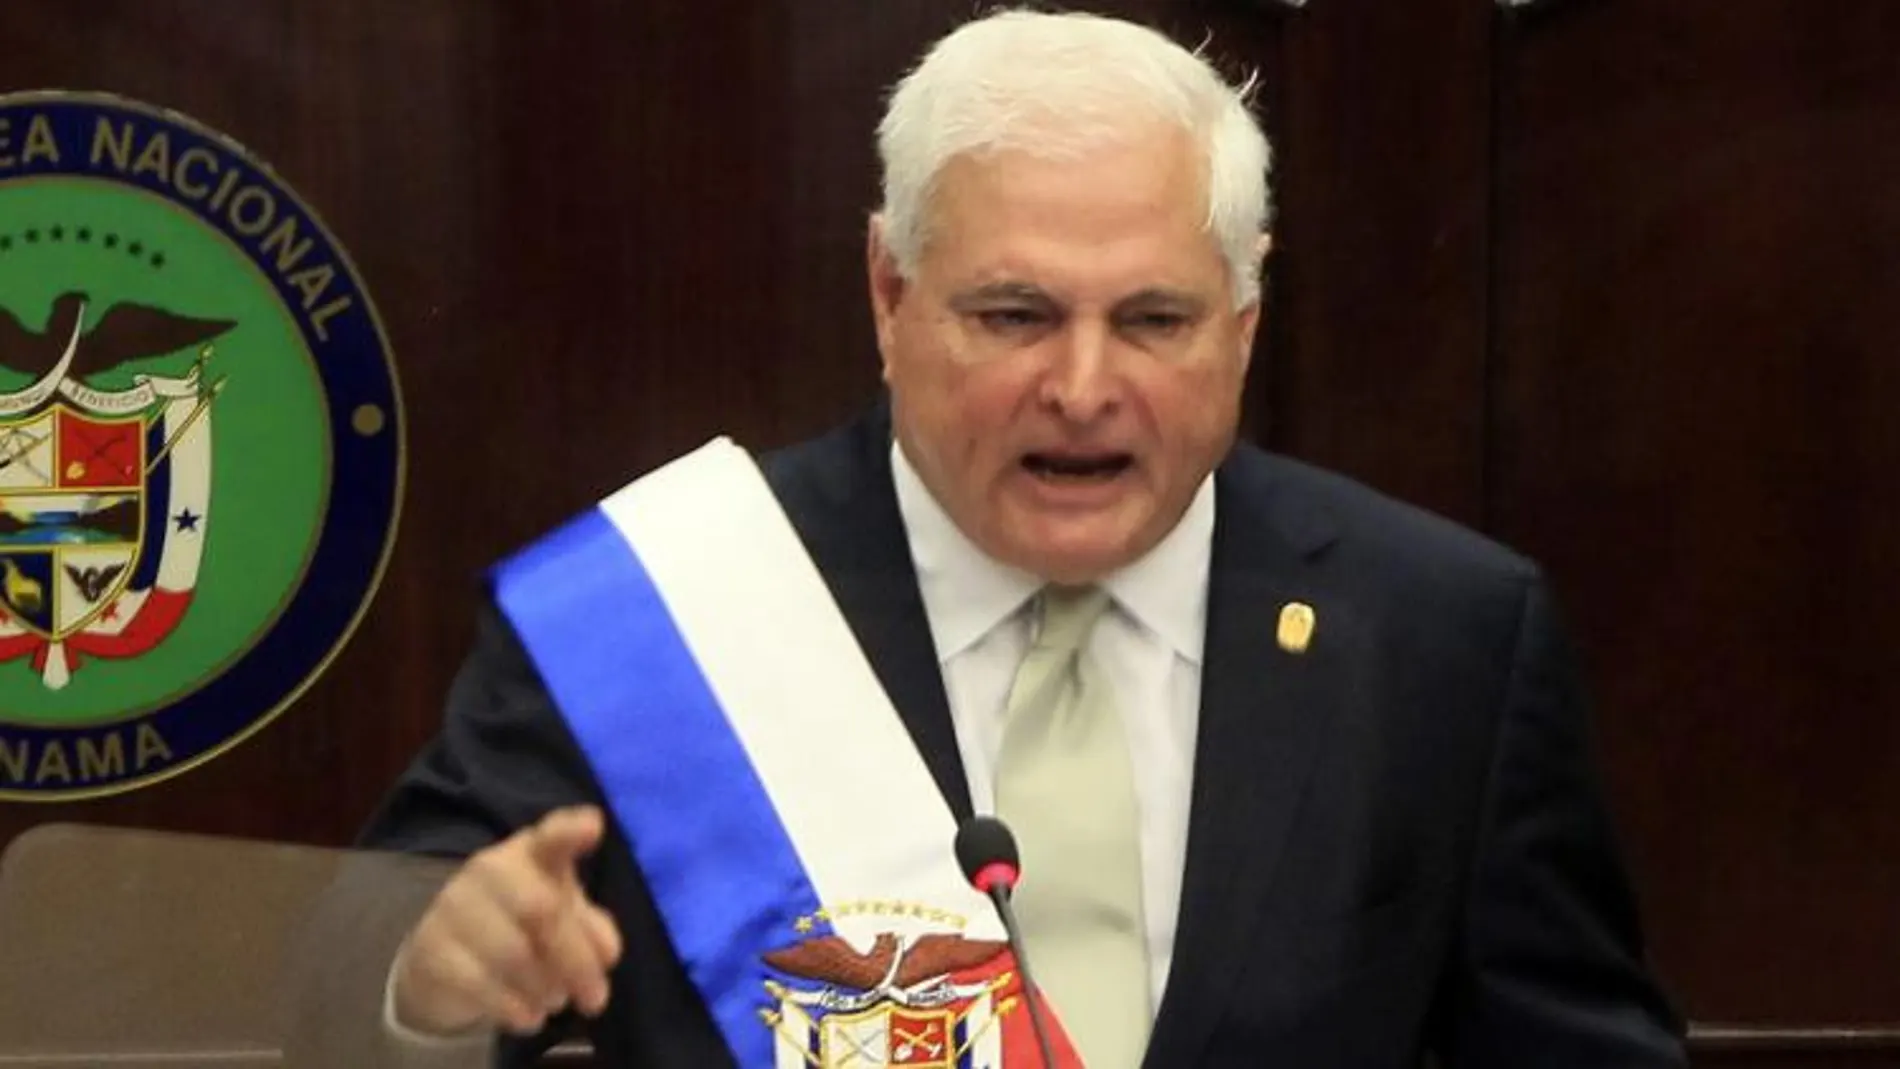 El presidente de Panamá, Ricardo Martinelli, asiste a la Asamblea Nacional ayer, jueves 2 de enero de 2013, en Ciudad de Panamá.